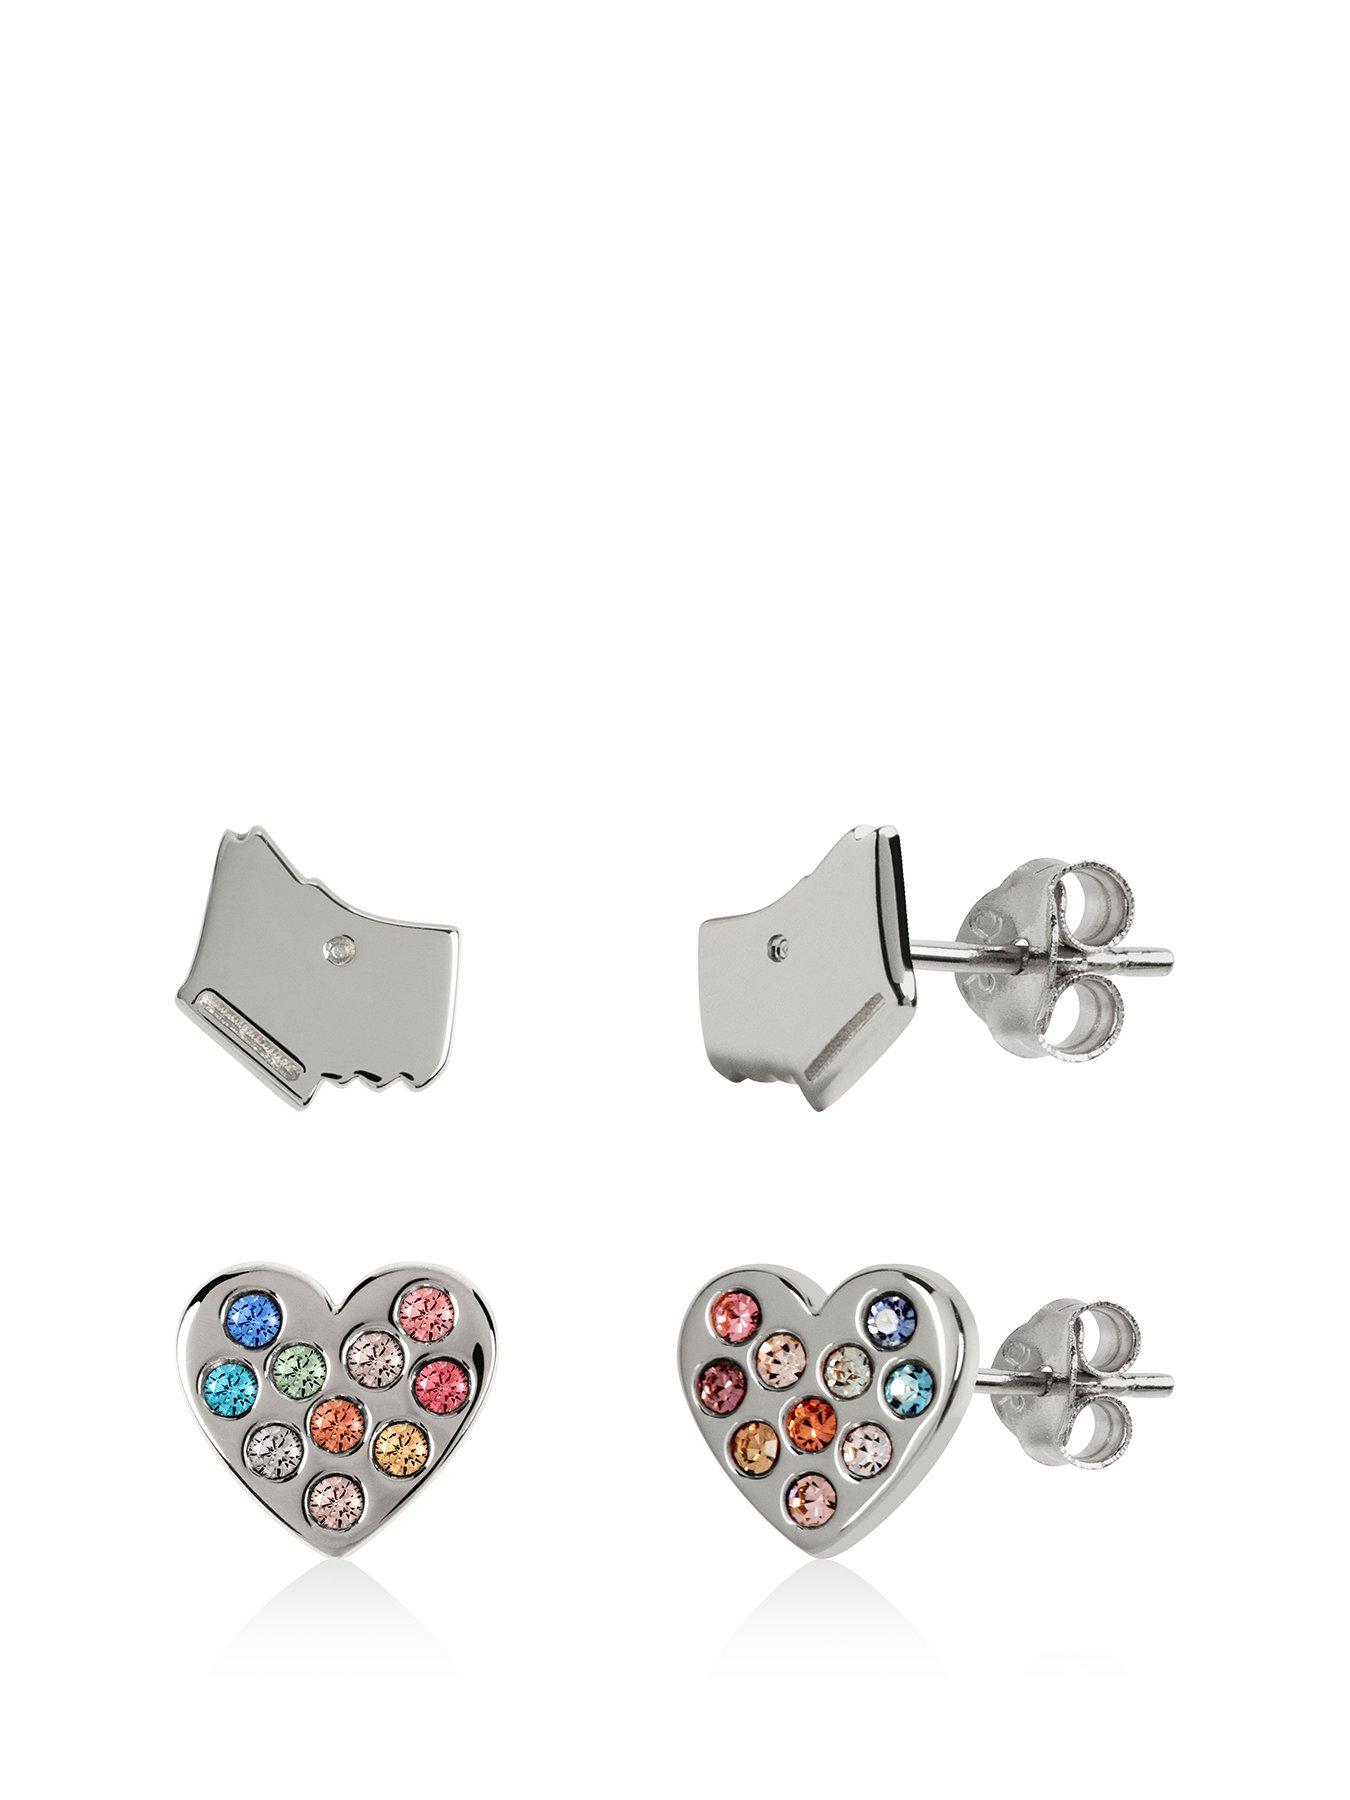 Solid 925 Sterling Silver Polished Enamel Heart Post Earrings 8mm x 5.9mm